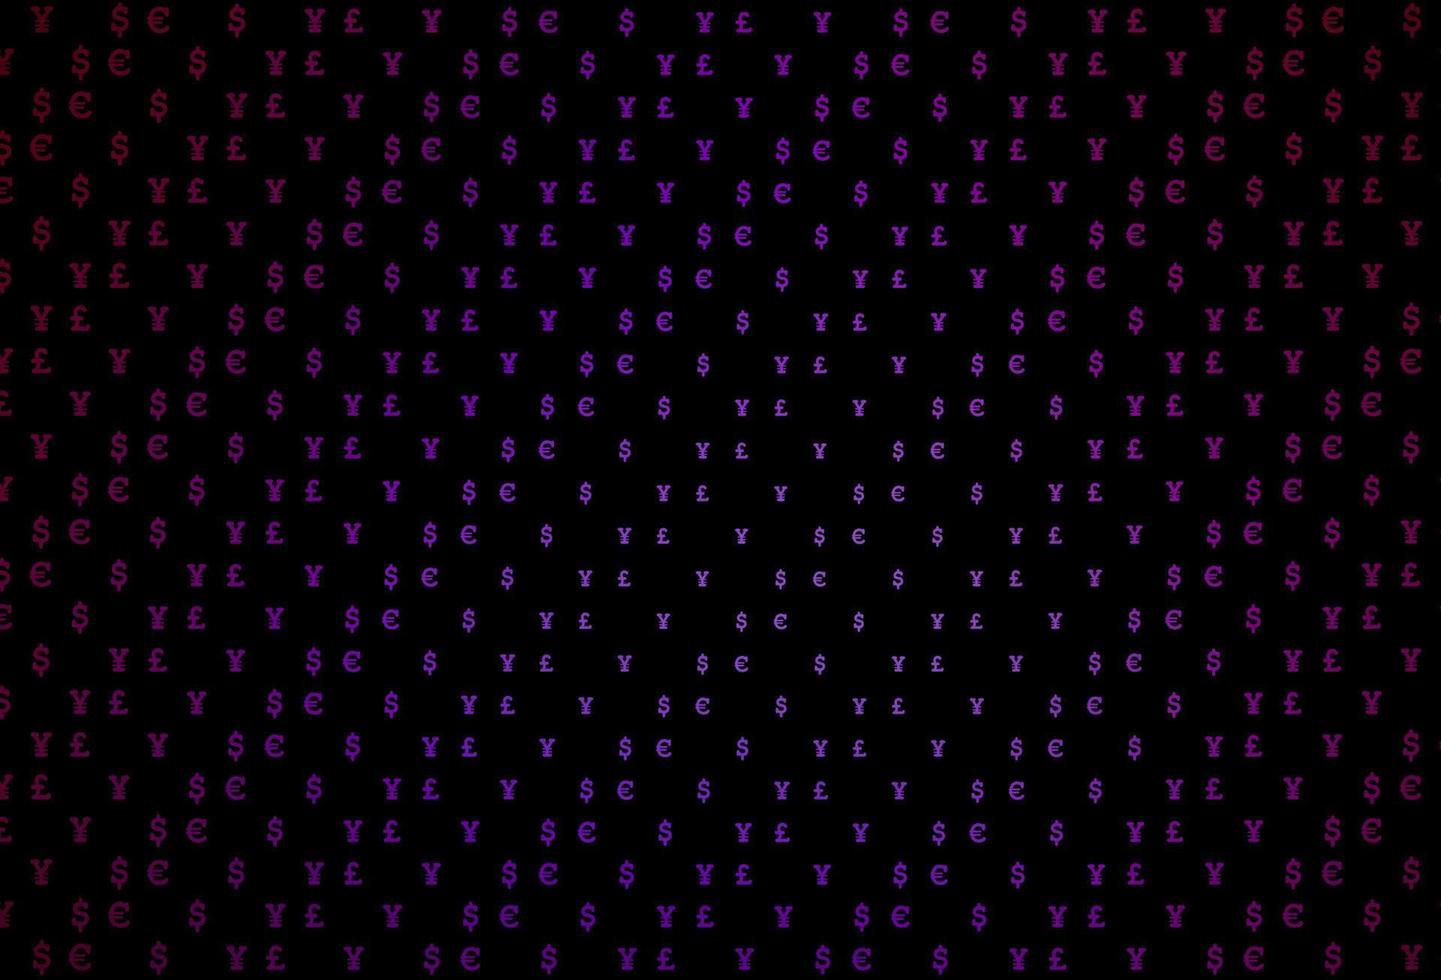 couverture vectorielle violet foncé avec eur, usd, gbp, jpy. vecteur